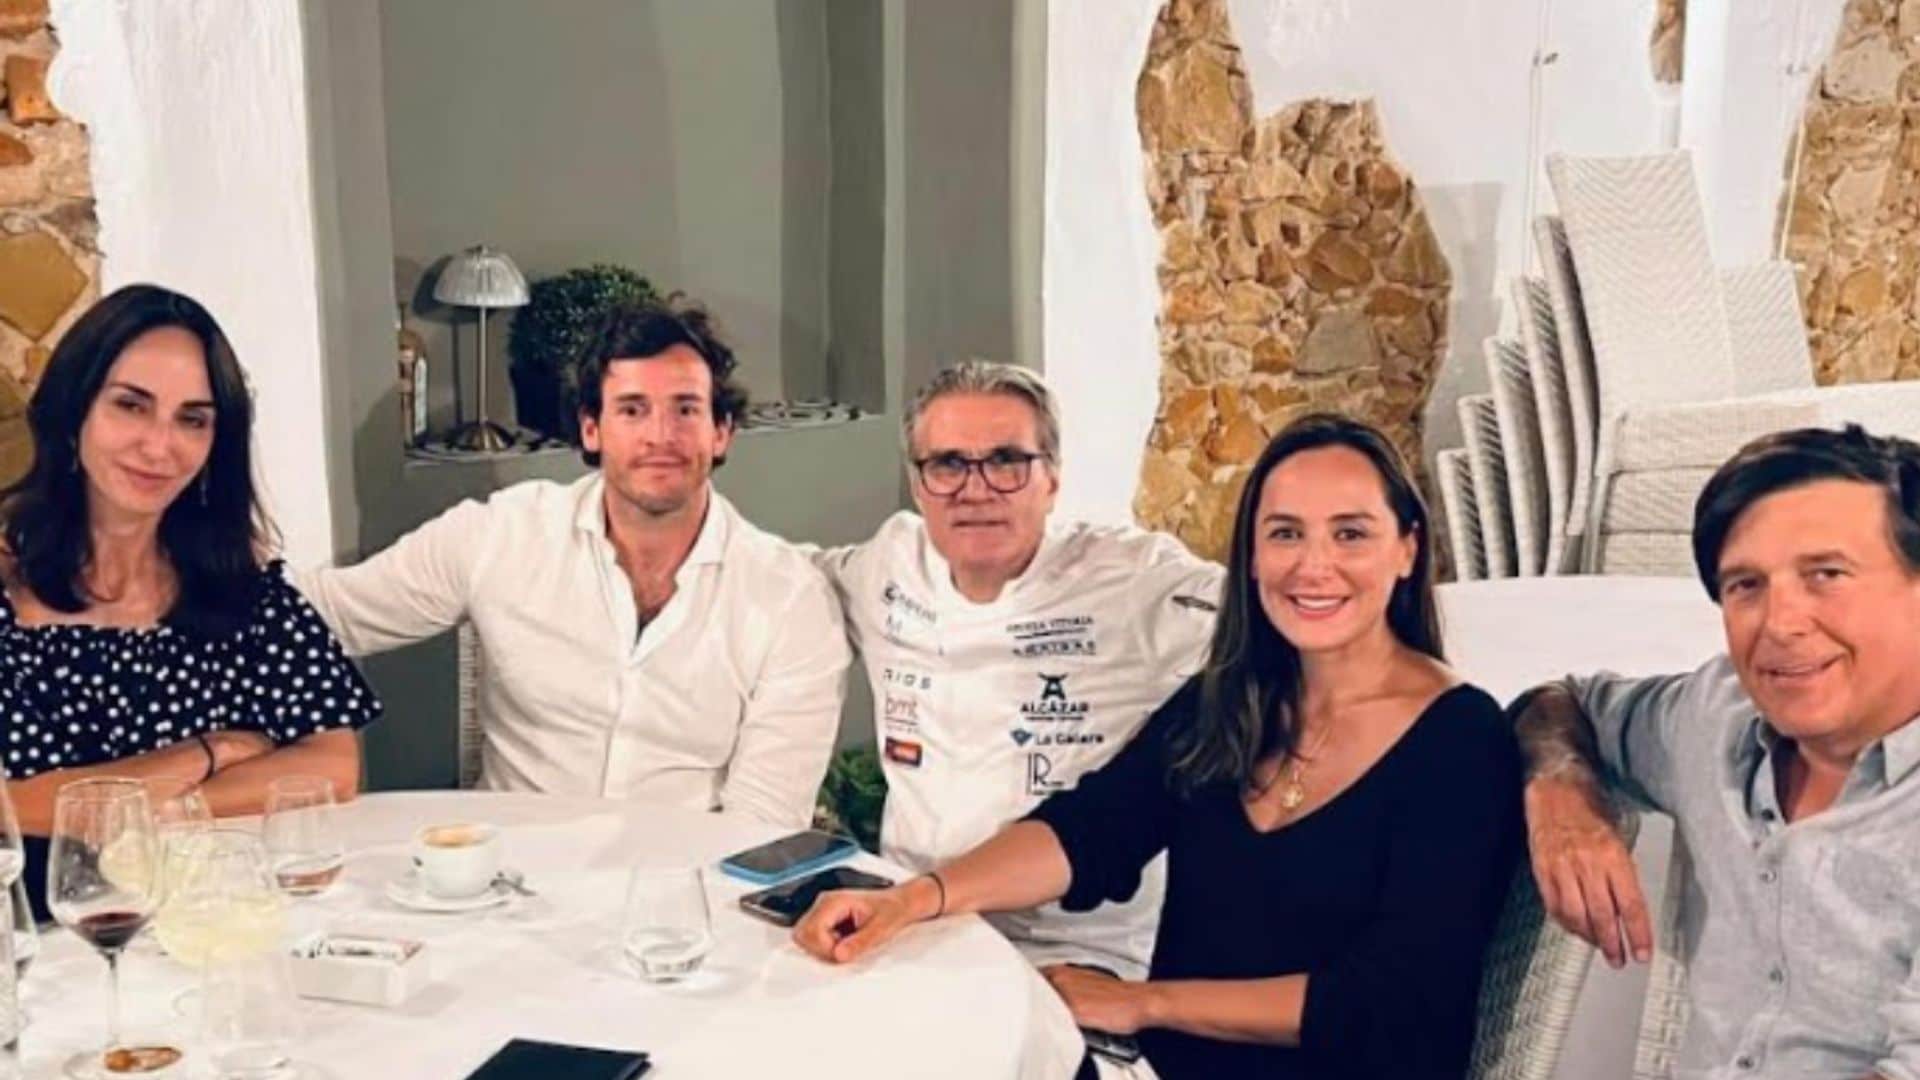 Tamara Falcó e Iñigo Onieva: descubrimos su plan gastro en Cádiz acompañados de Manuel Falcó y su esposa